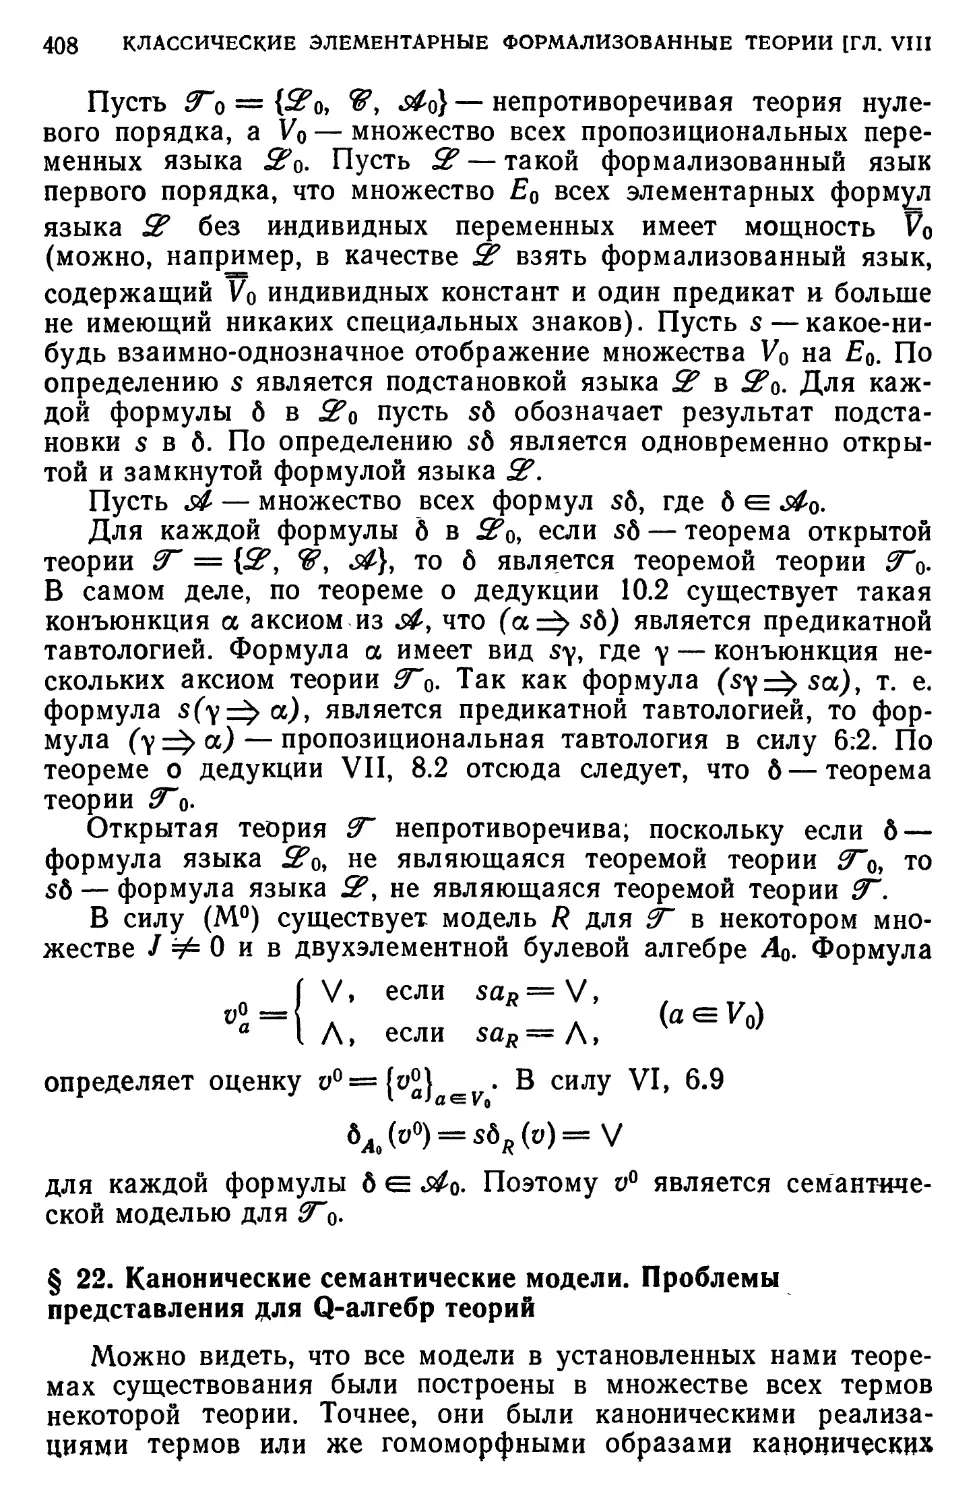 § 22. Канонические семантические модели. Проблемы представления для Q-алгебр теорий